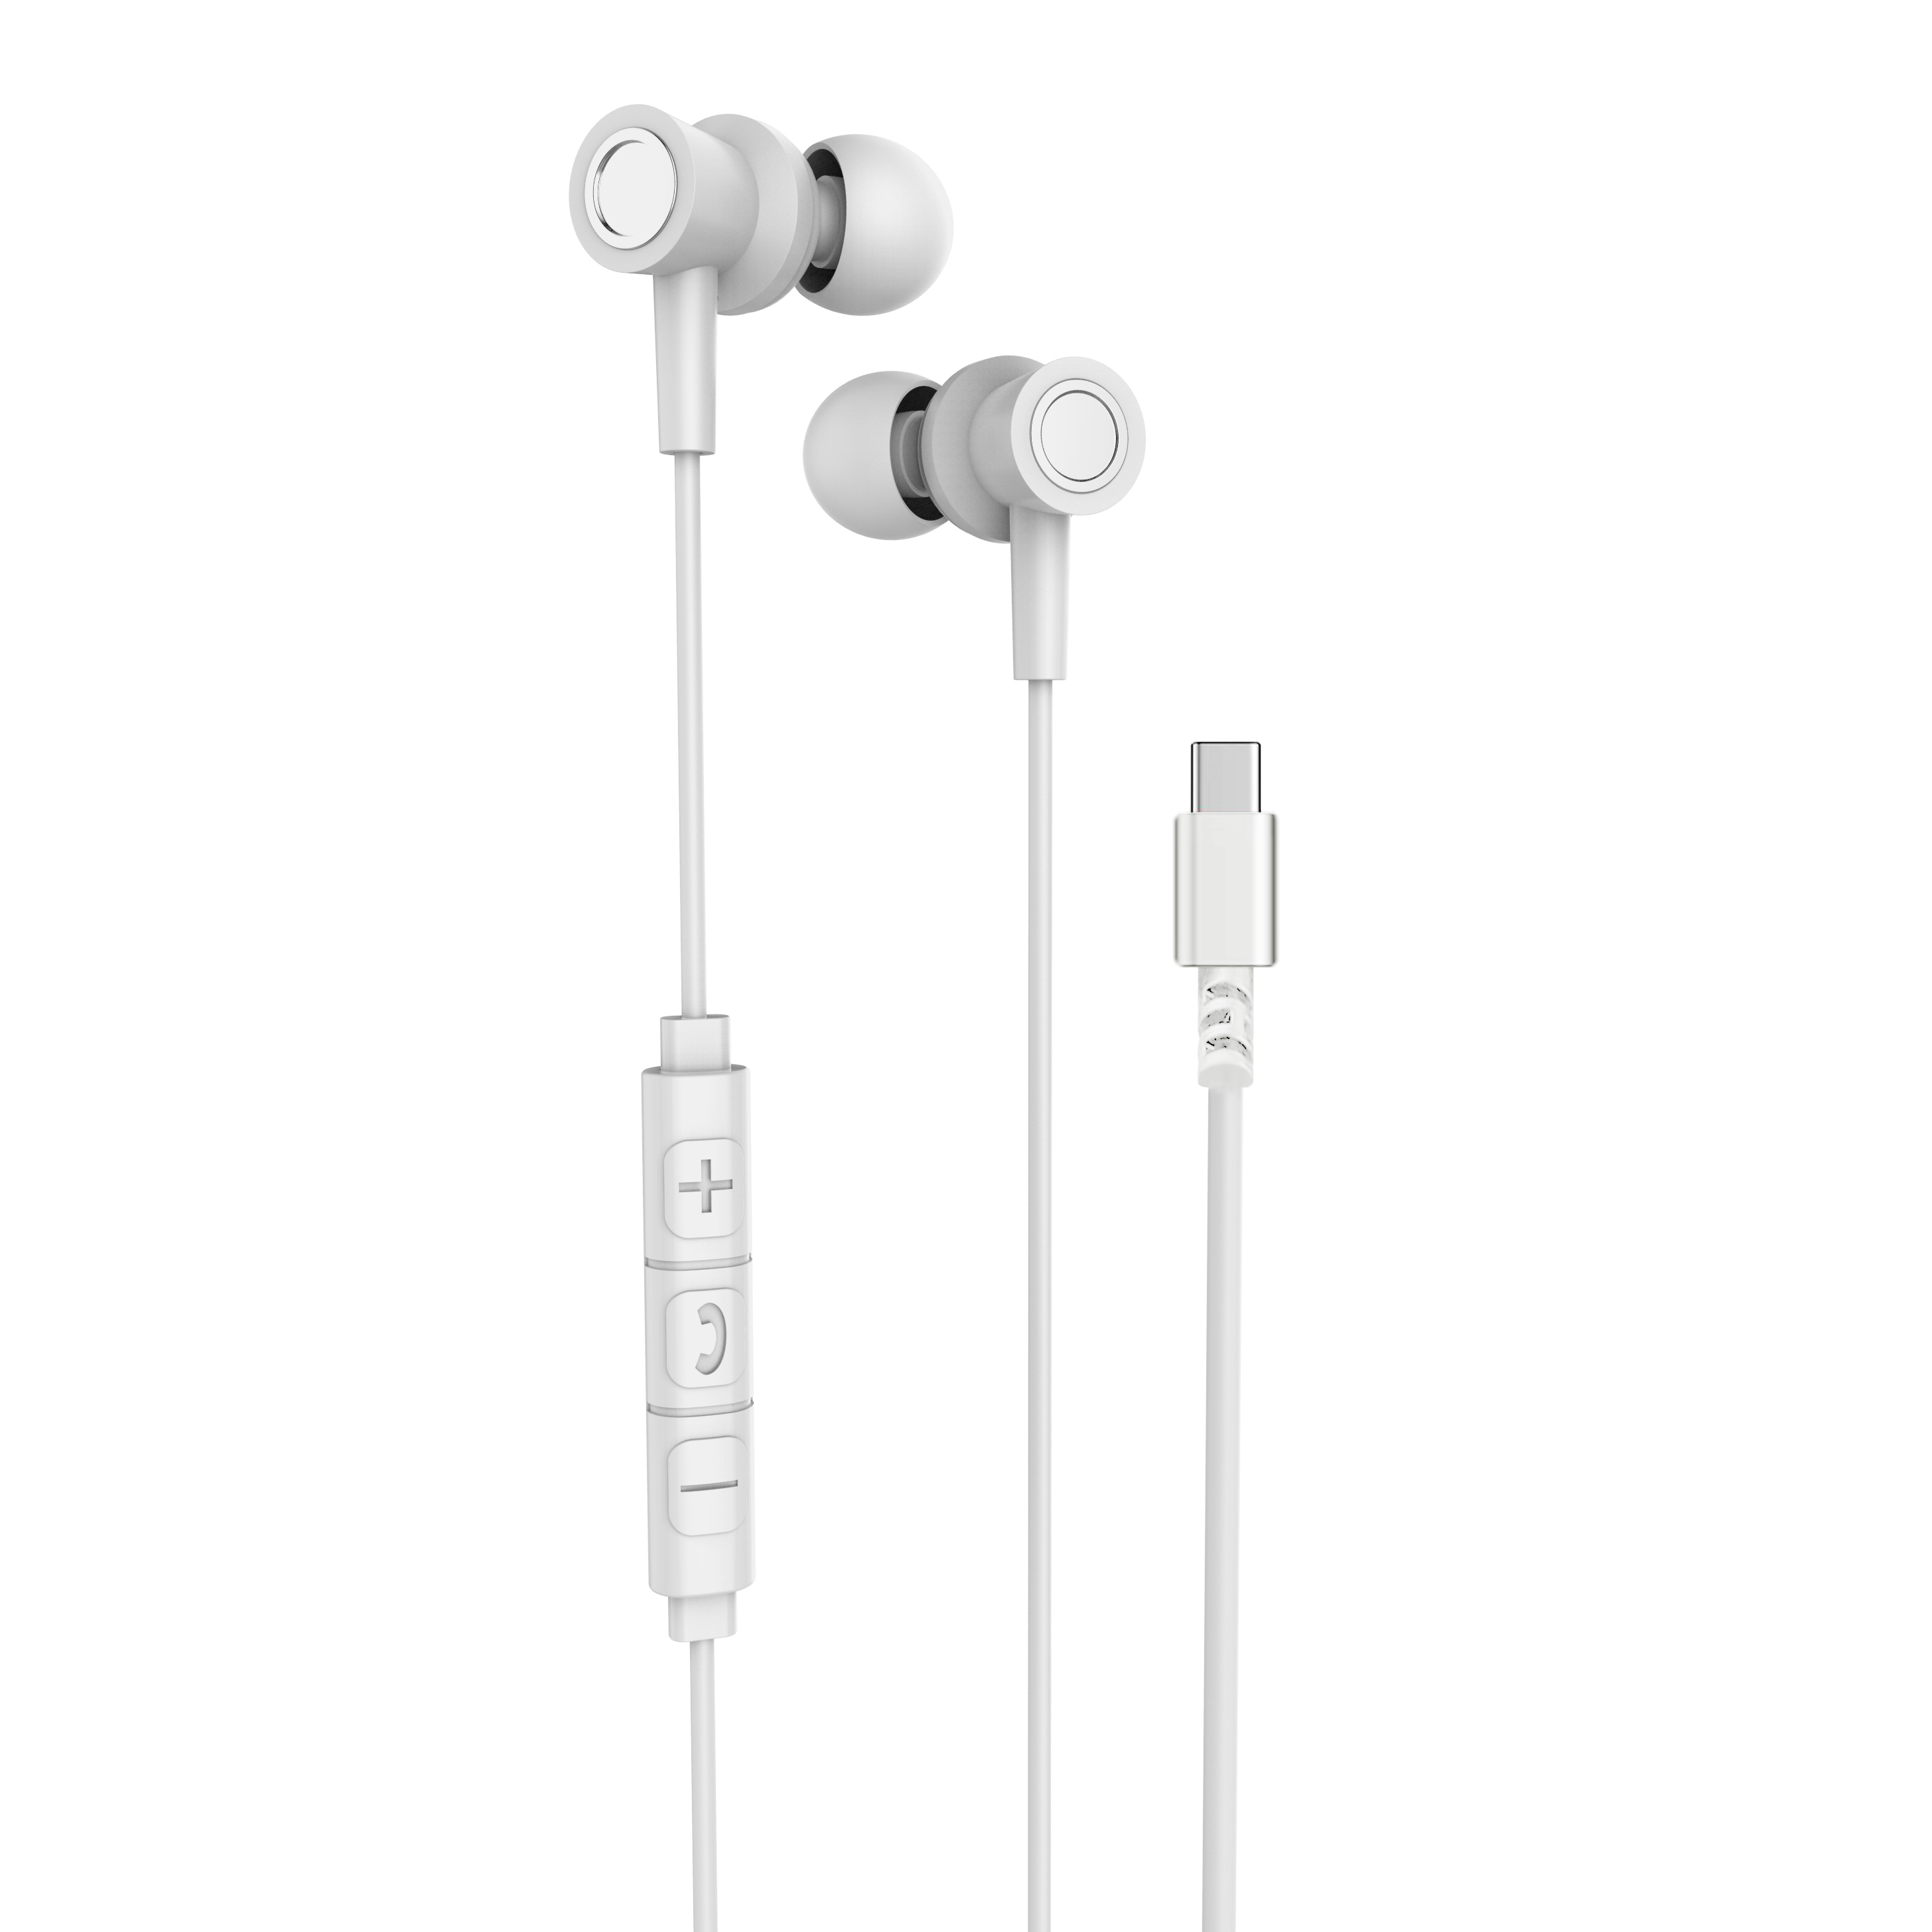 R17彩色手机线控耳机有线耳机 活塞入耳 带包装出货 安卓iOS系统通用详情图2